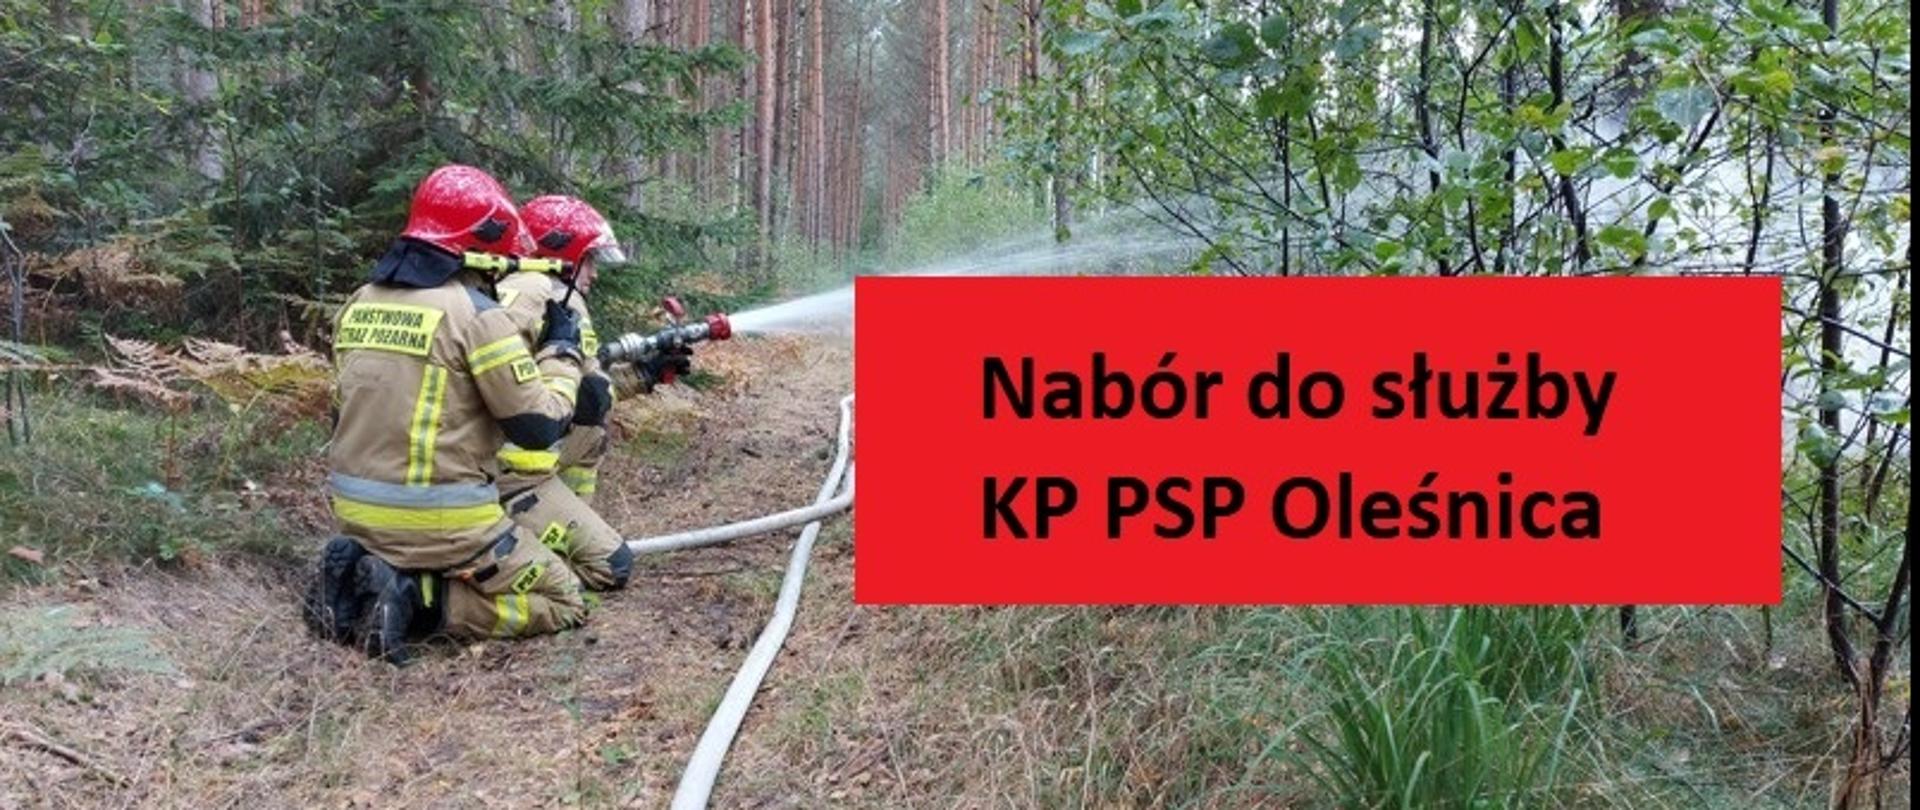 Na zdjęciu widać dwóch strażaków w lesie, którzy podają prąd wody. Widoczny napis - nabór do służby w KP PSP Oleśnica. 